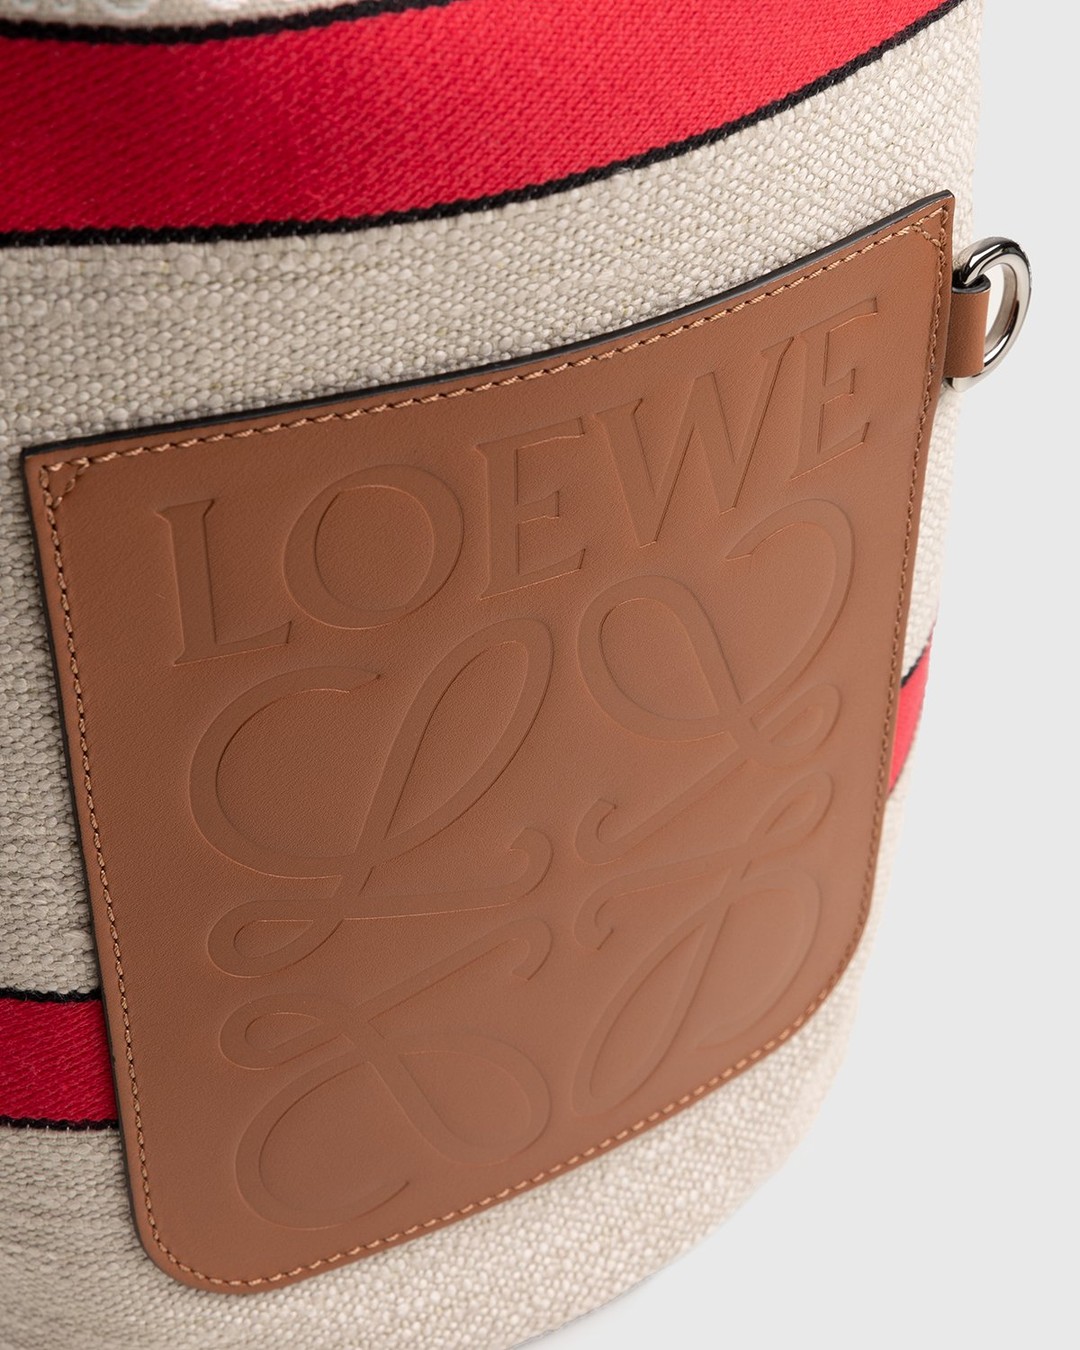 Loewe – Paula's Ibiza Sailor Bag Ecru/Red - Bags - Red - Image 3